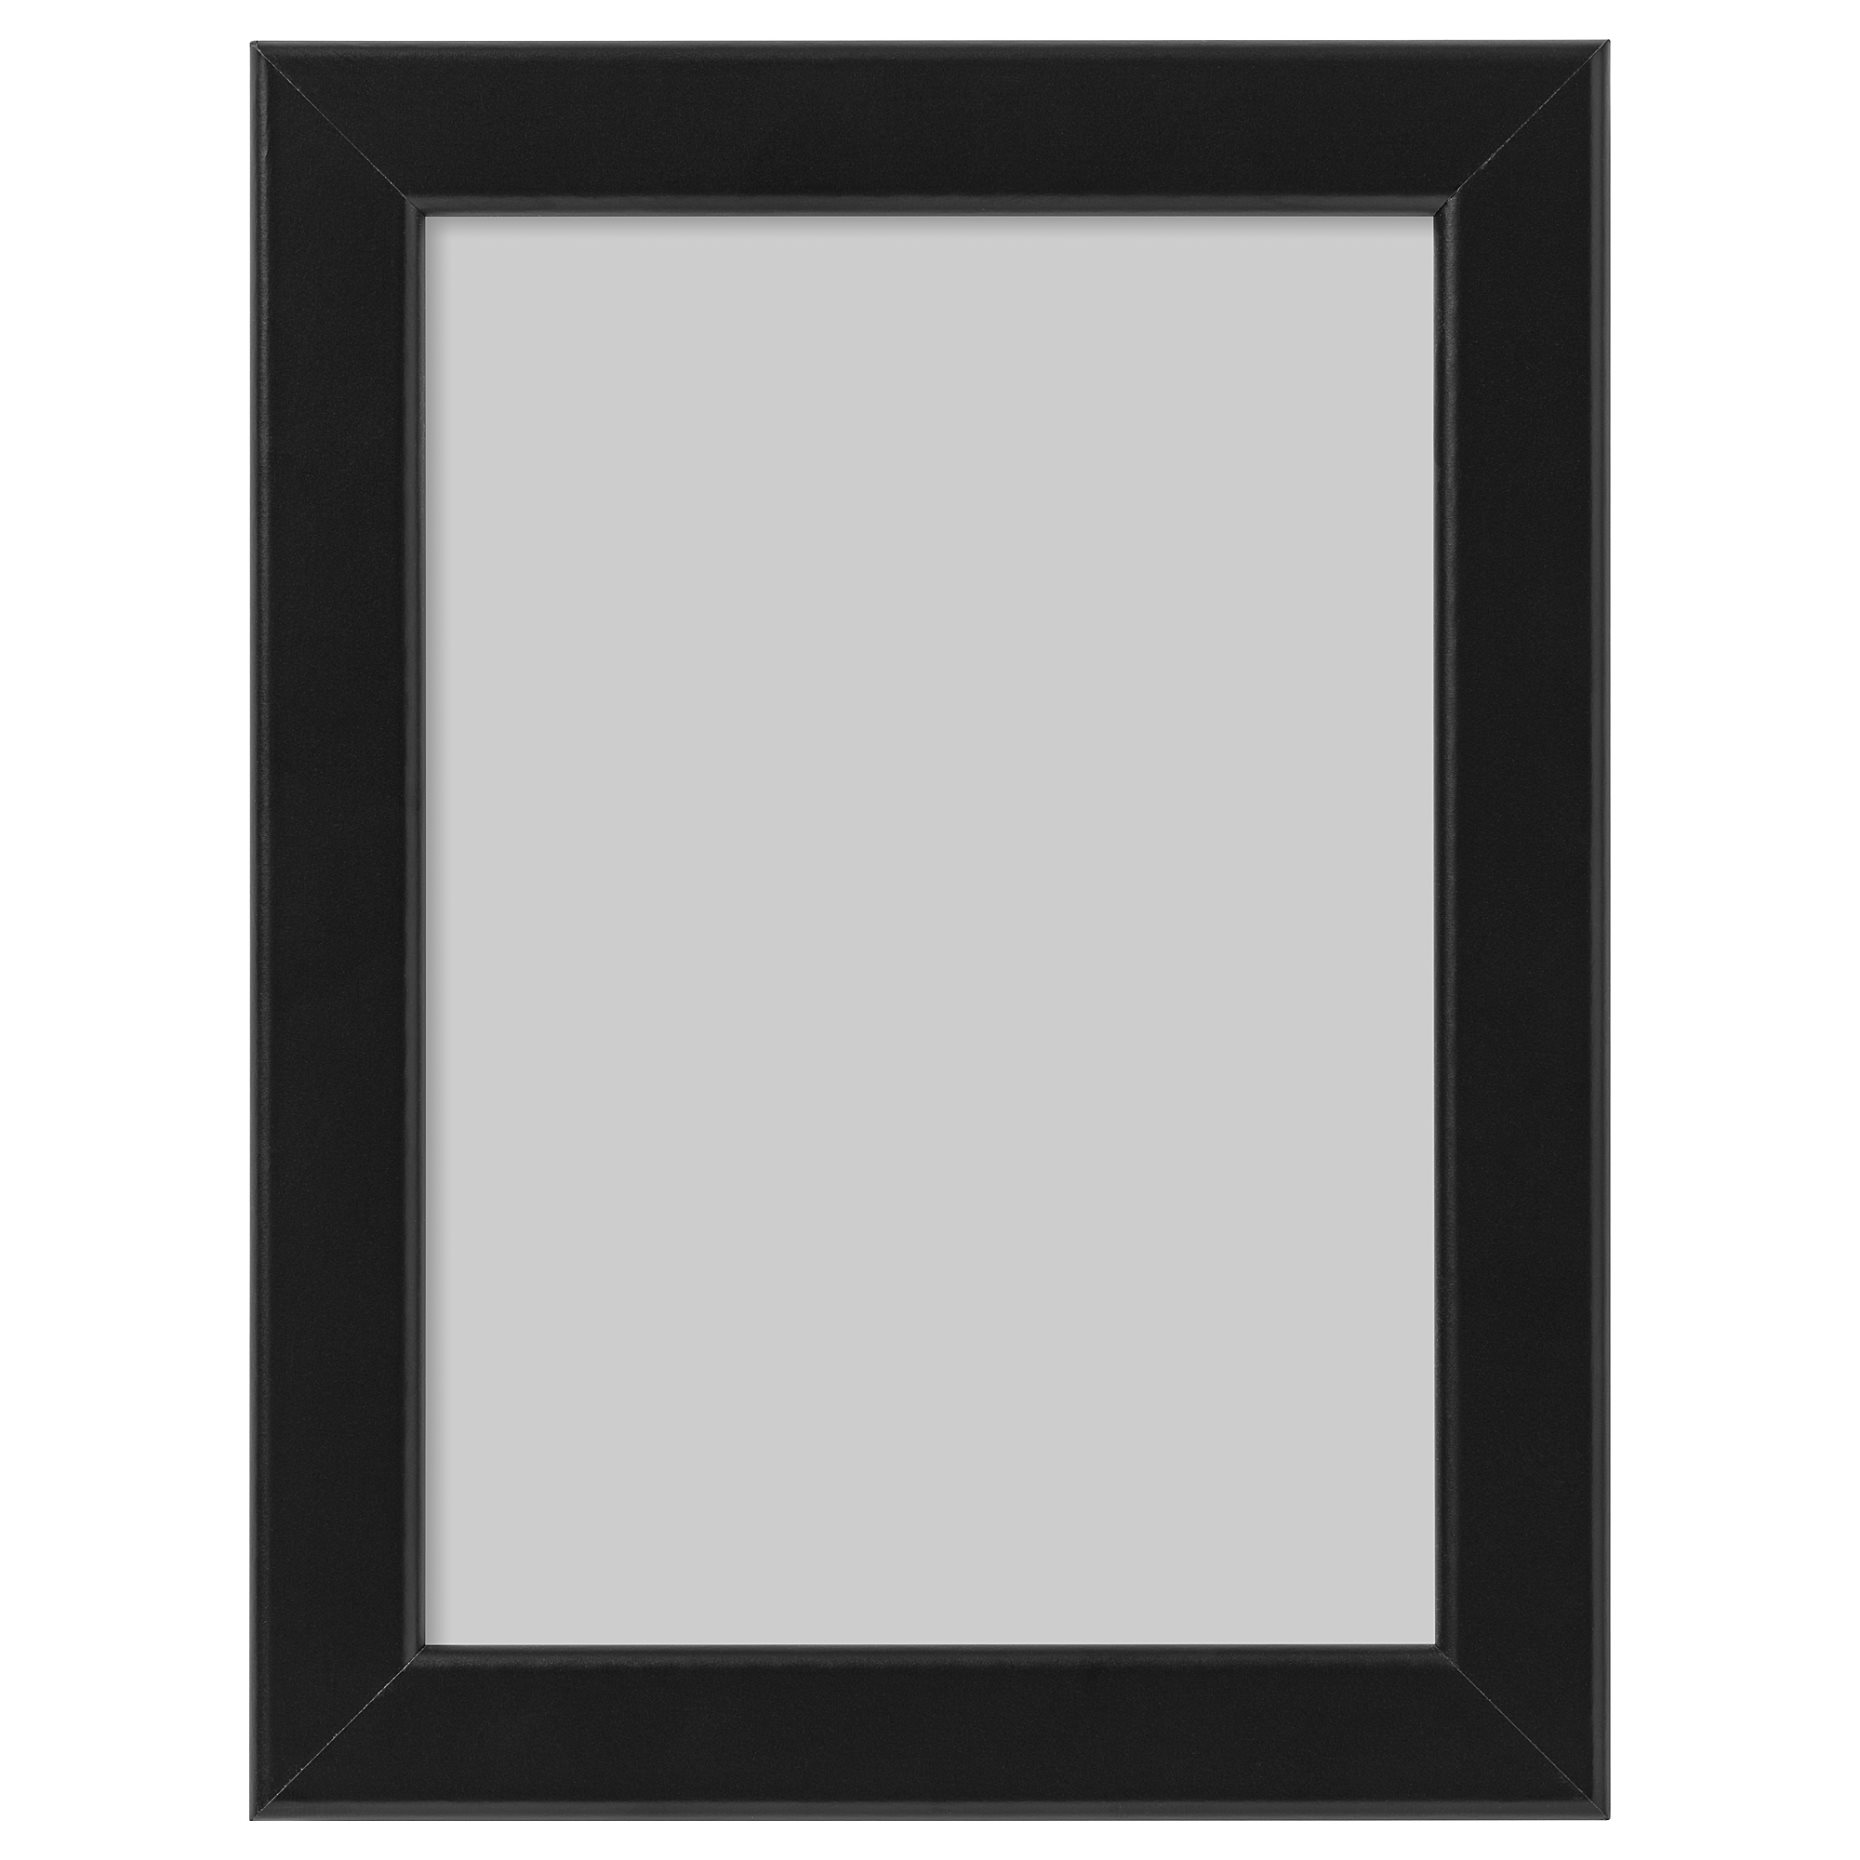 FISKBO, frame, 13x18 cm, 903.003.58